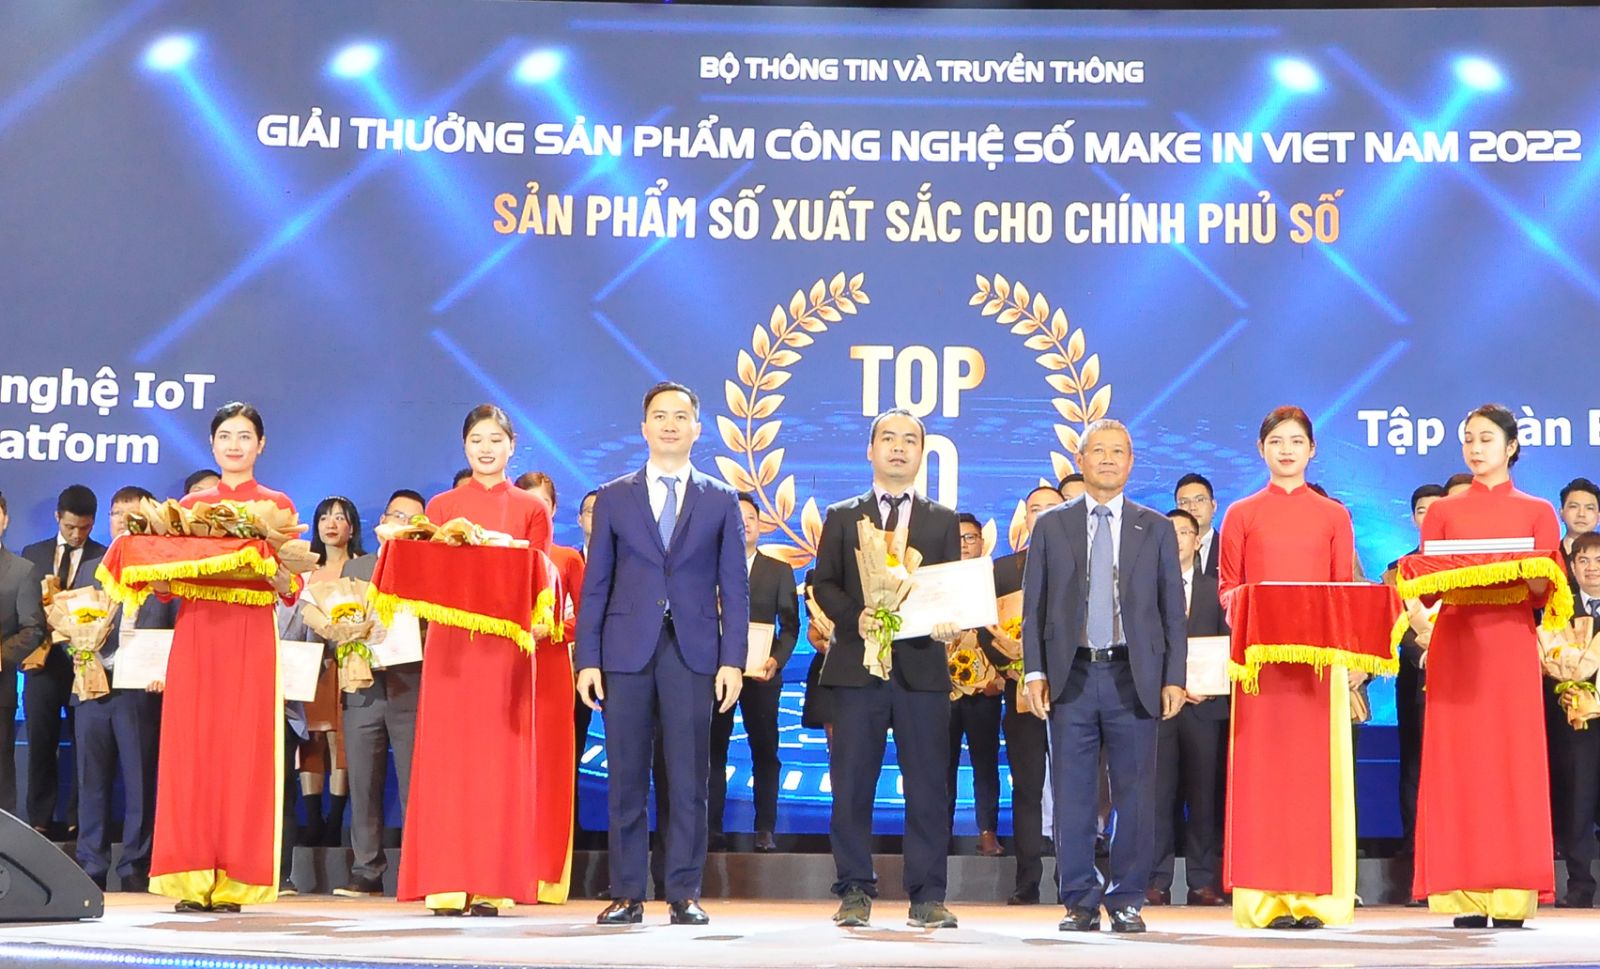 Make in Viet Nam 2022 vinh danh 4 giải pháp số của VNPT